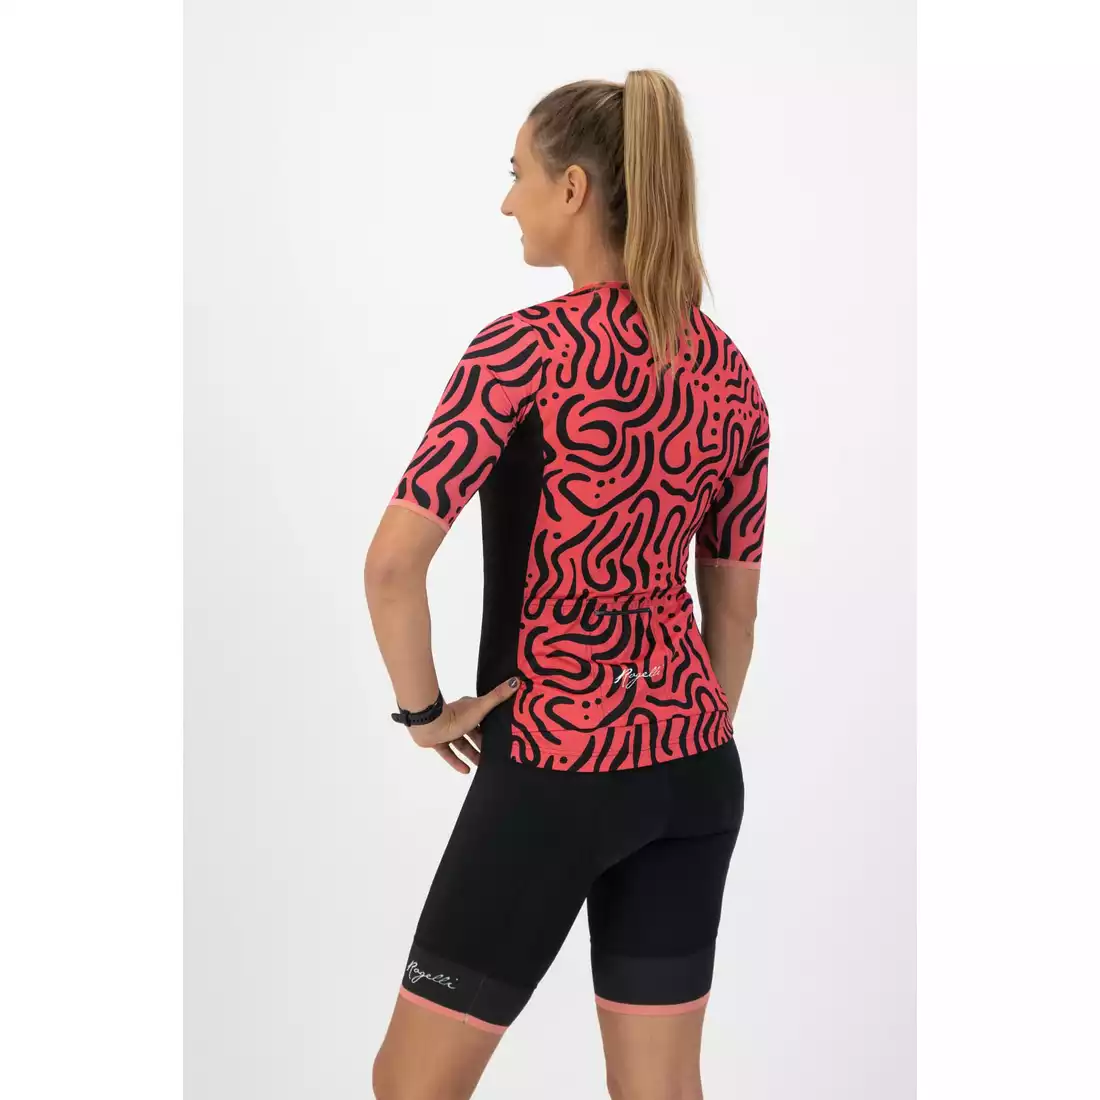 Rogelli ABSTRACT damska koszulka rowerowa, różowo-czarna 